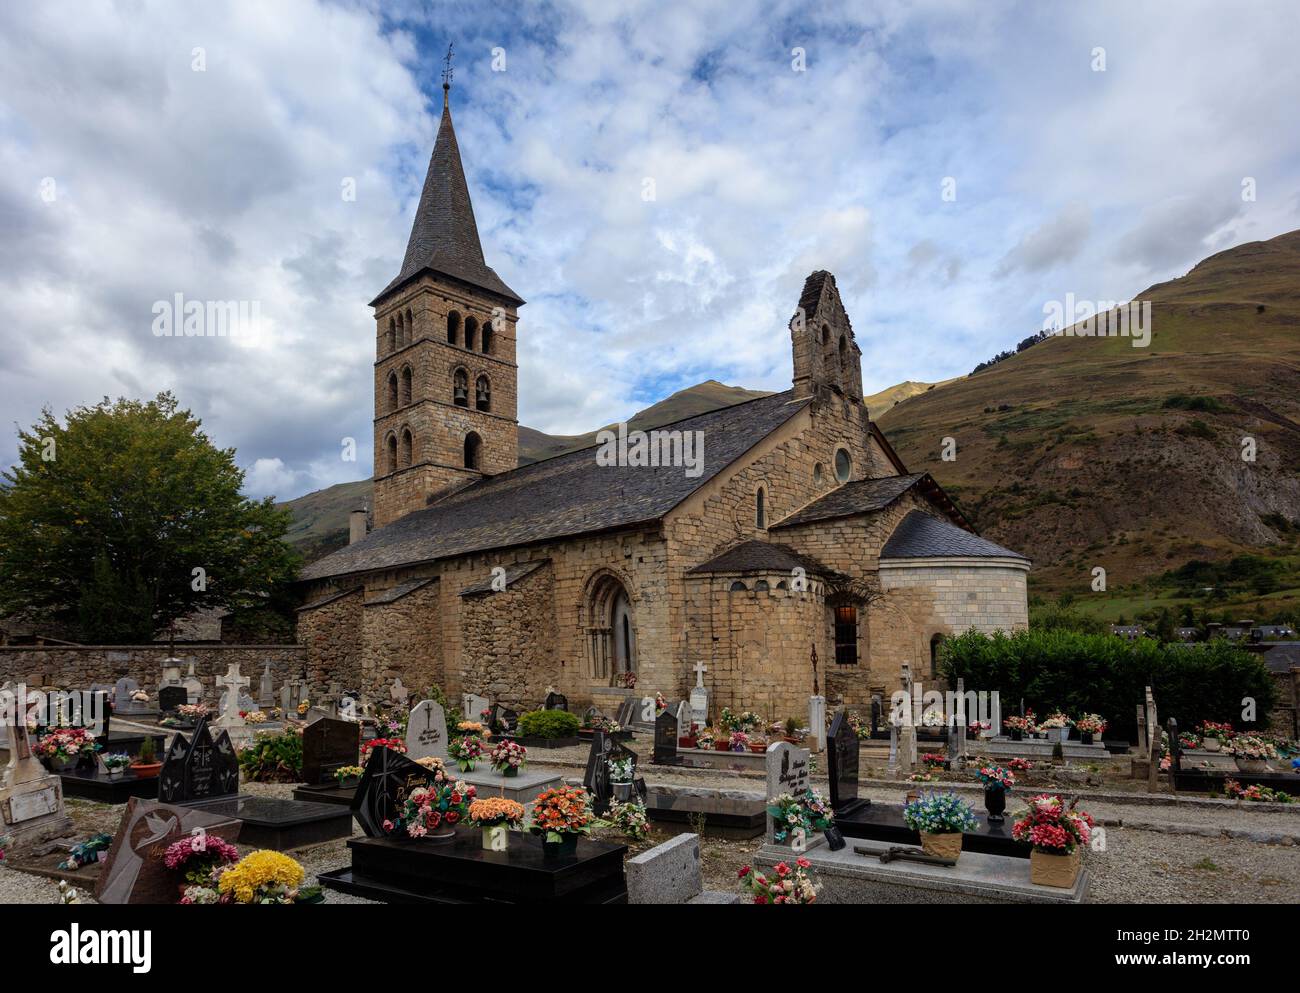 The romanesque church Santa Maria de Arties in the Aran Valley, Catalonia. Spain. Stock Photo